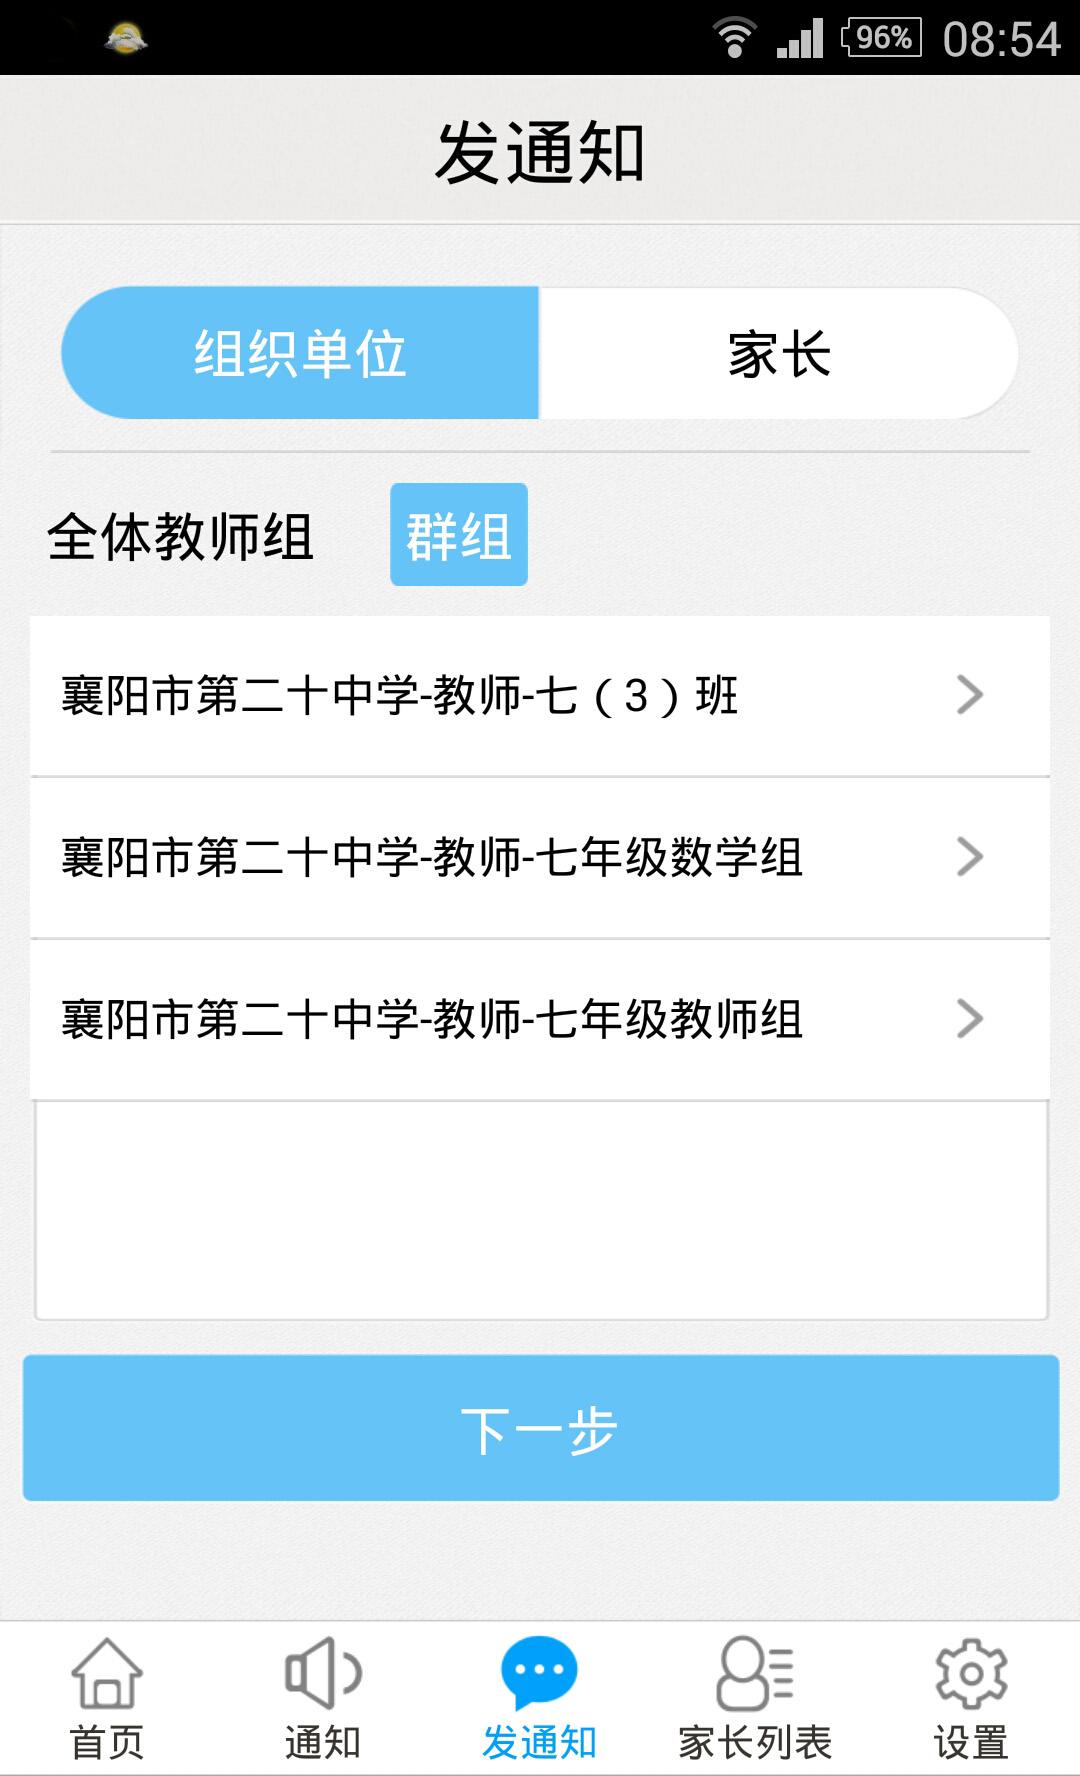 天天捷报iPhone版 v1.0 苹果手机版0